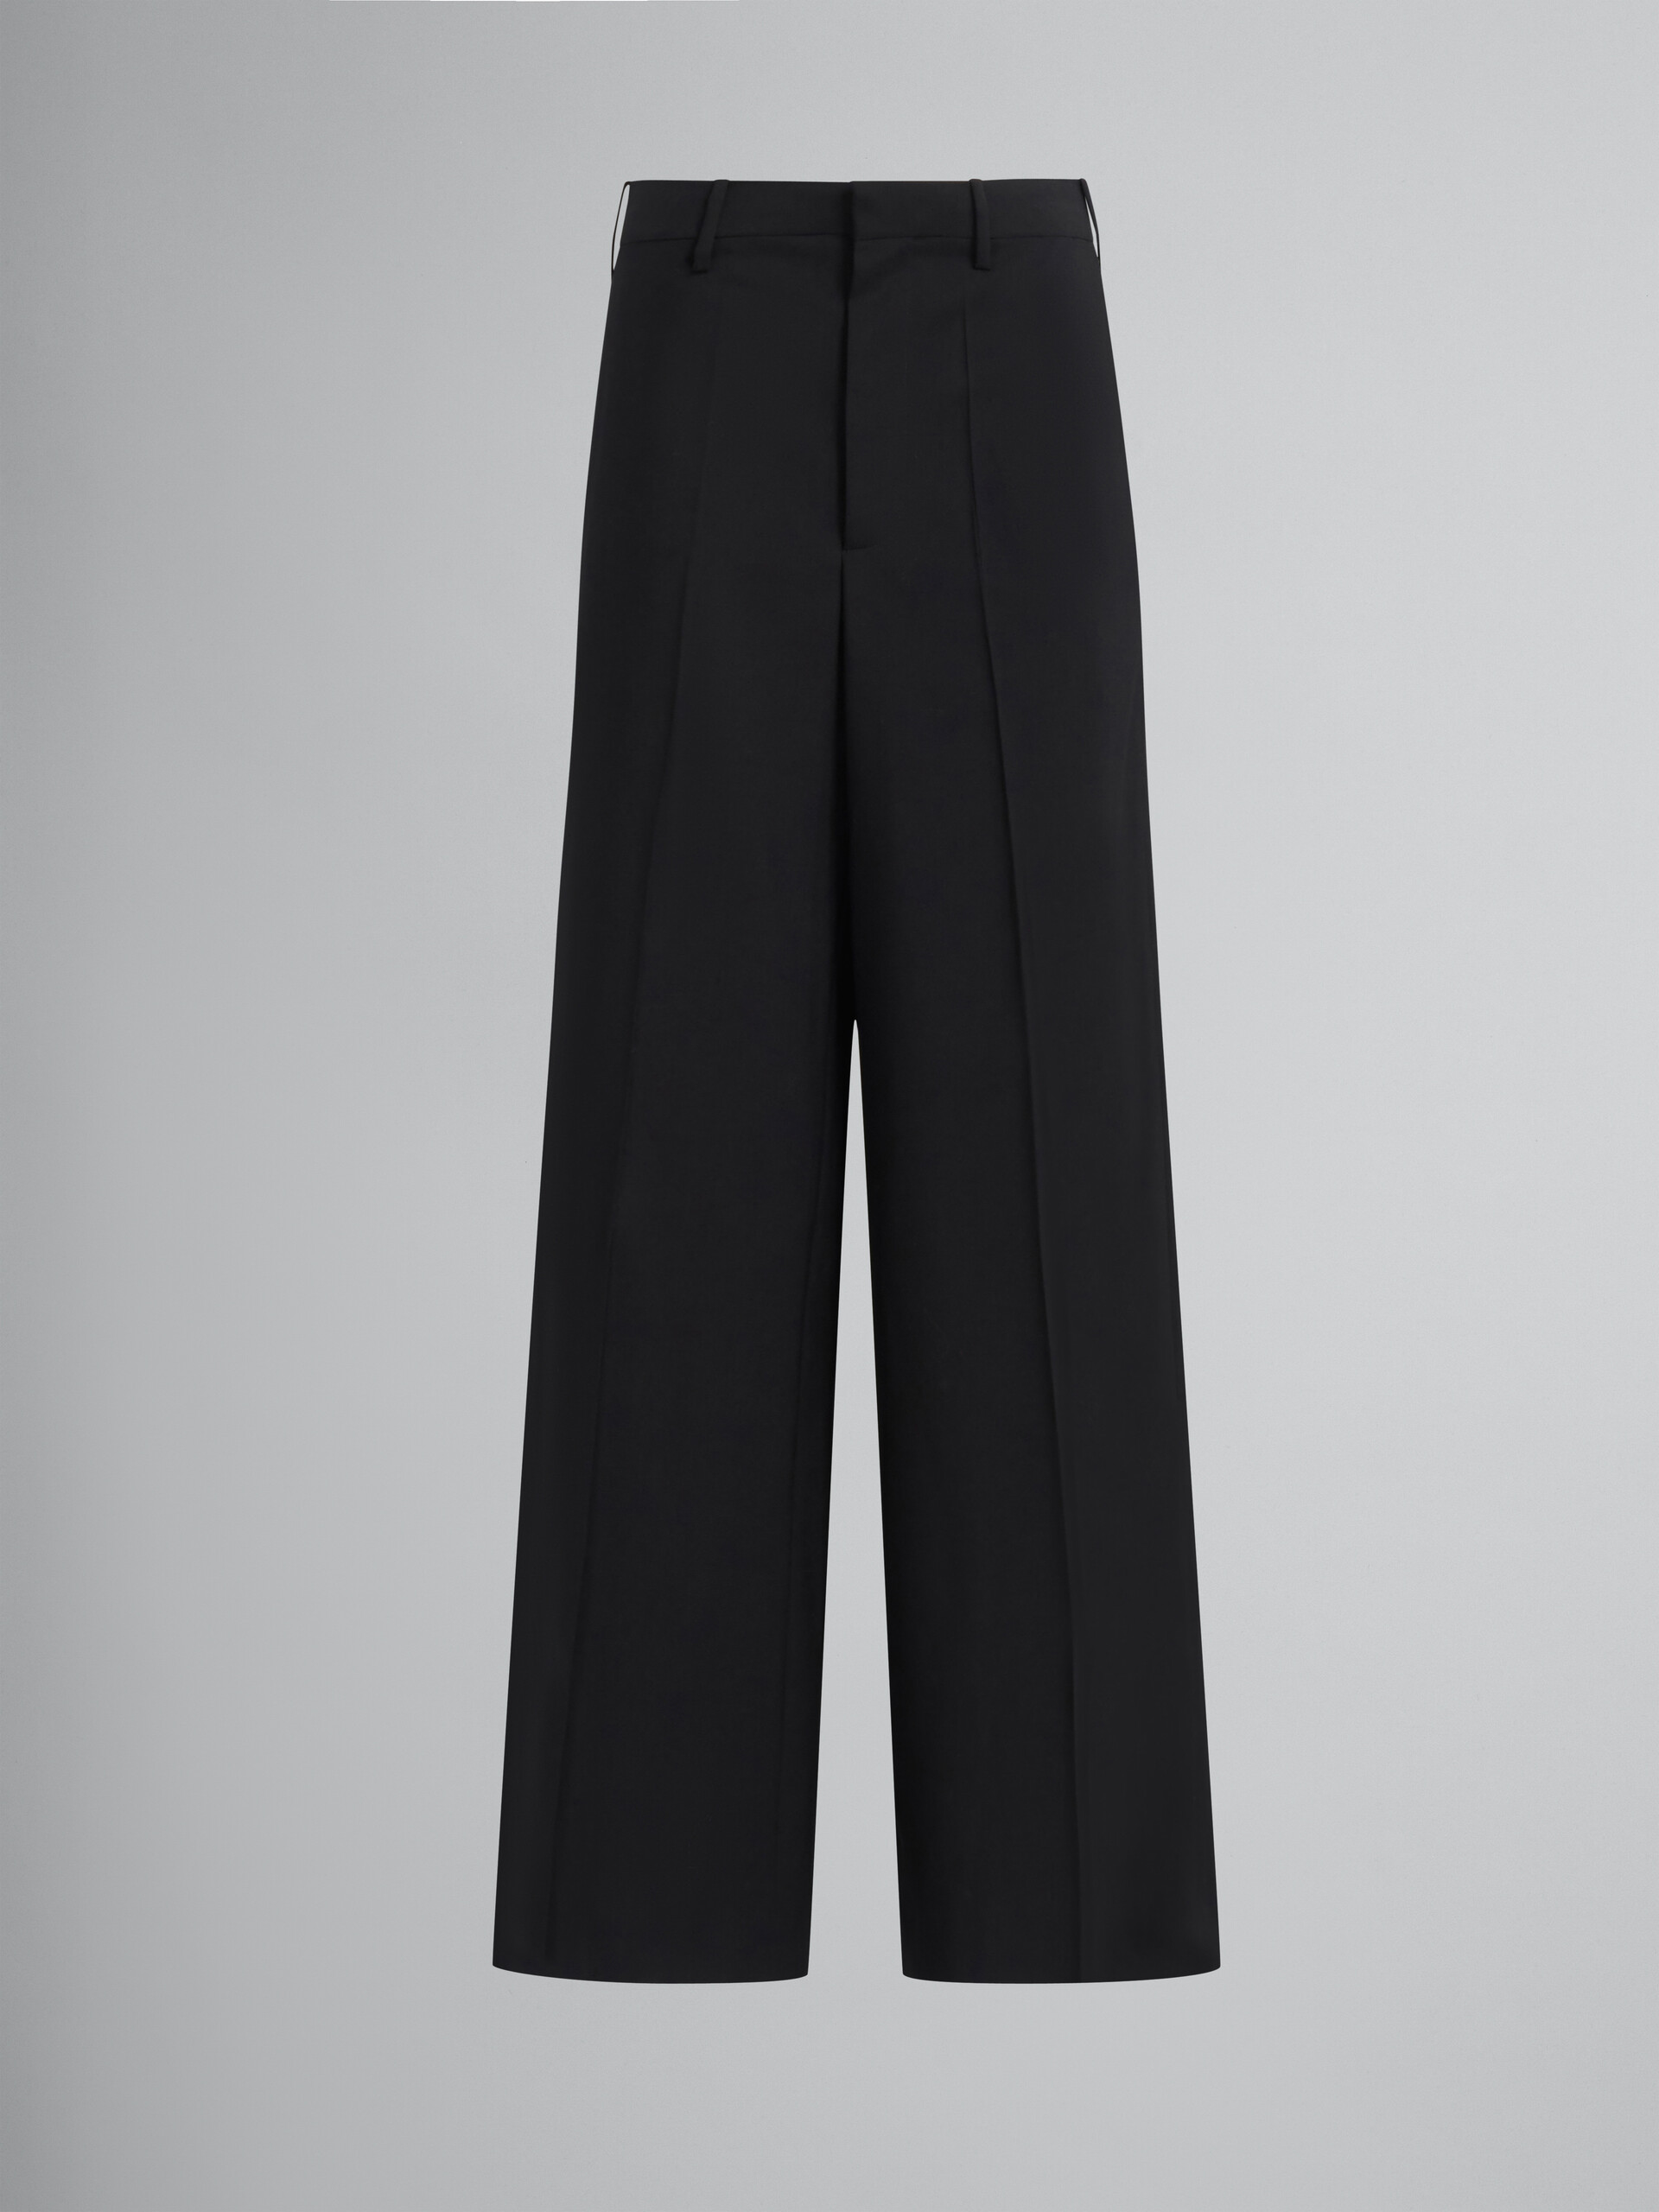 Pantalon palazzo en laine tropicale noire - Pantalons - Image 1